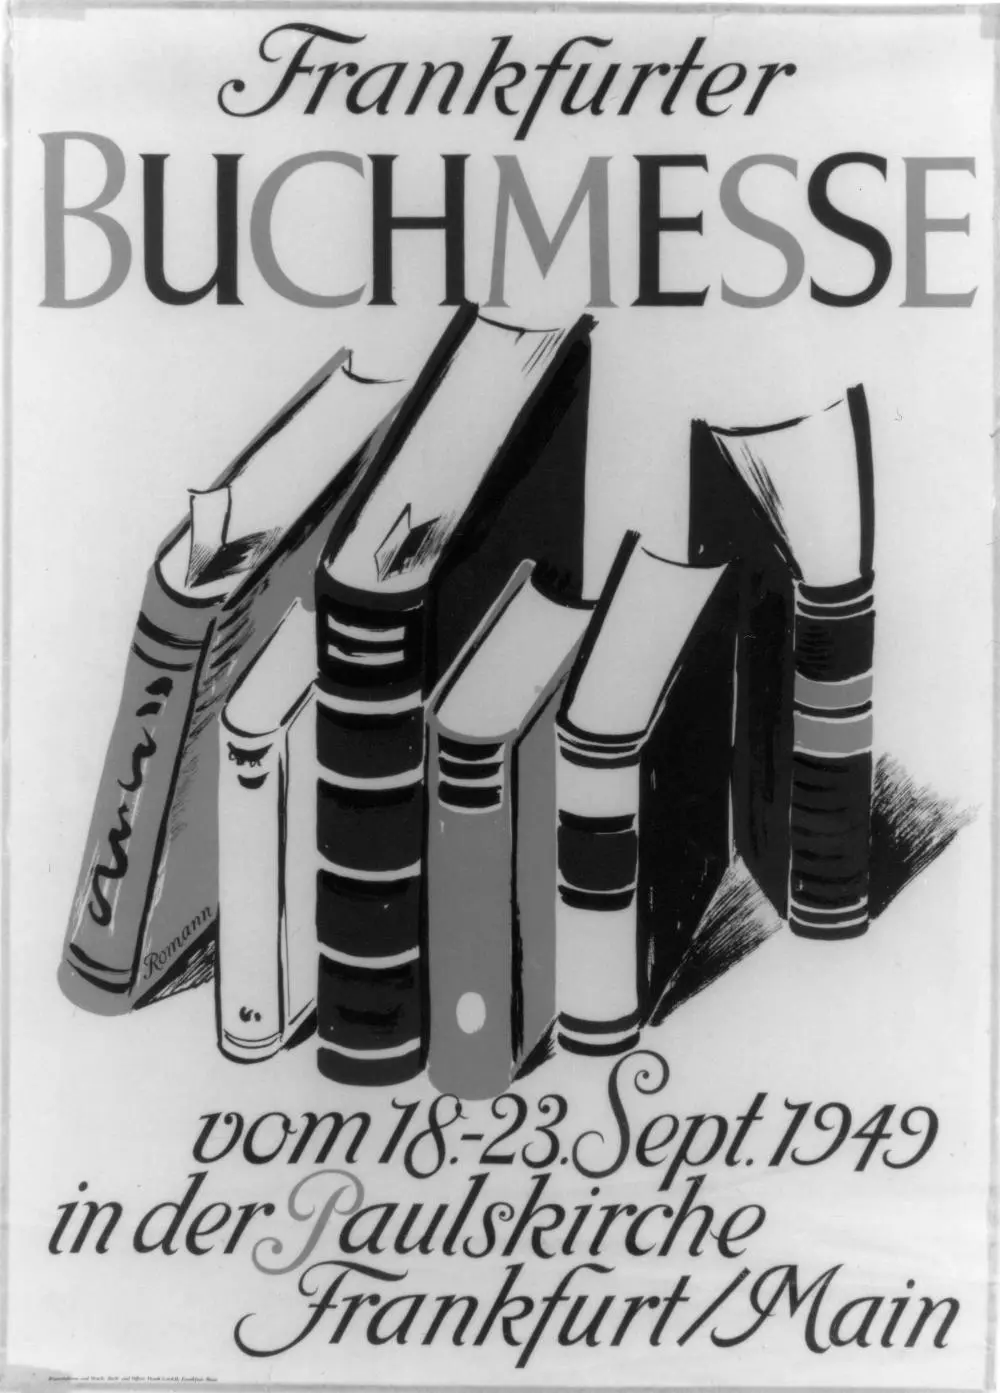 Das Bild zeigt ein Plakat zur ersten Frankfurter Buchmesse im jahr 1949.